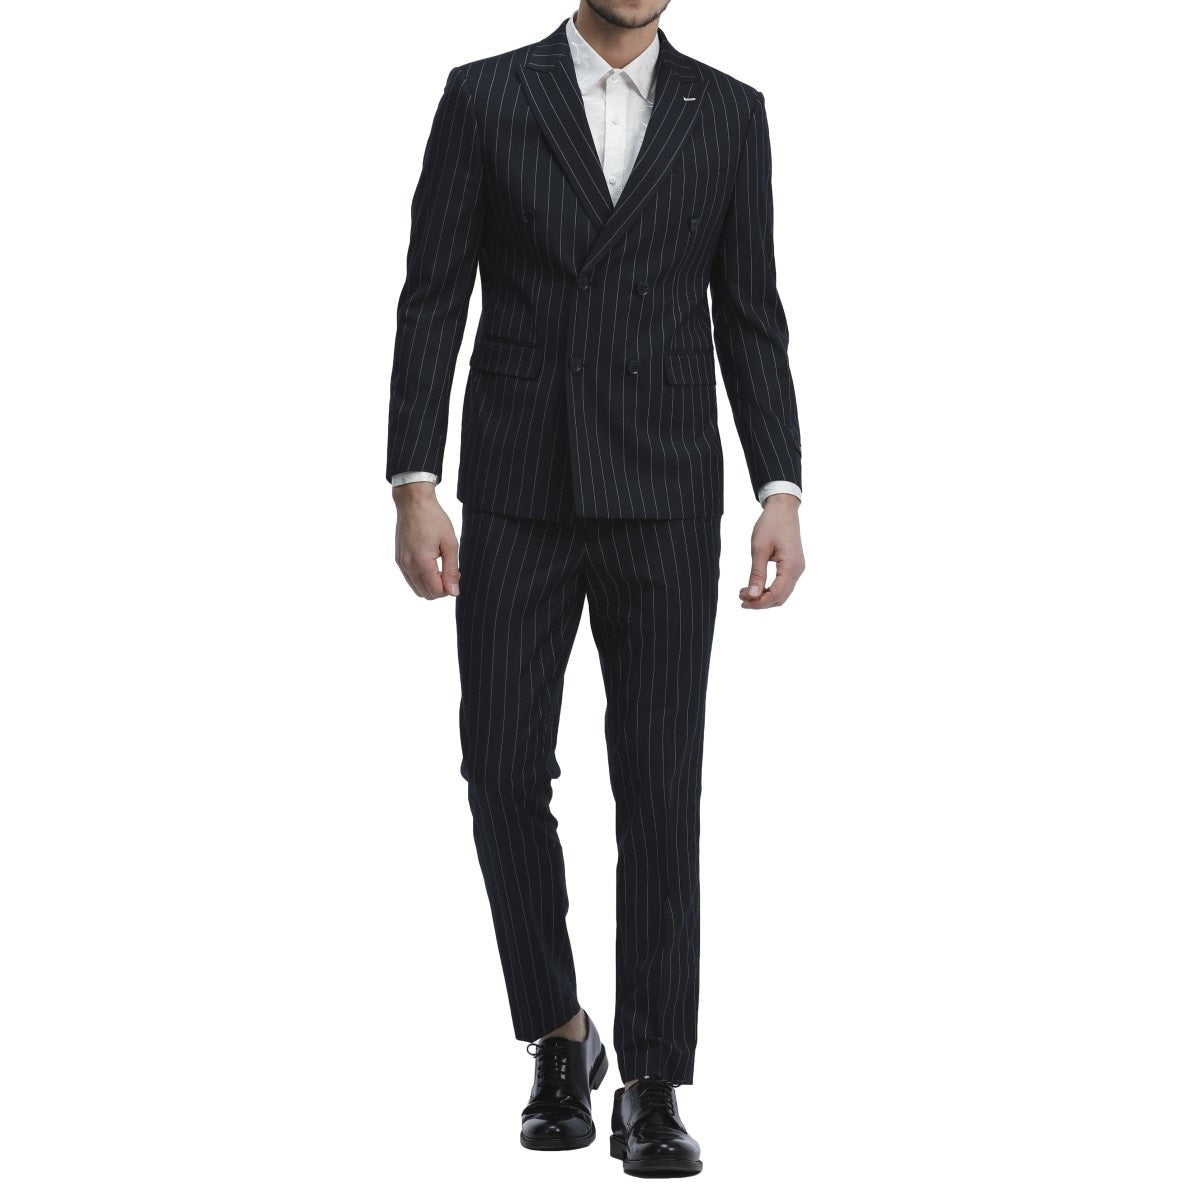 Traje Formal para Hombre TA-M340SK-02 - Formal Suit for Men